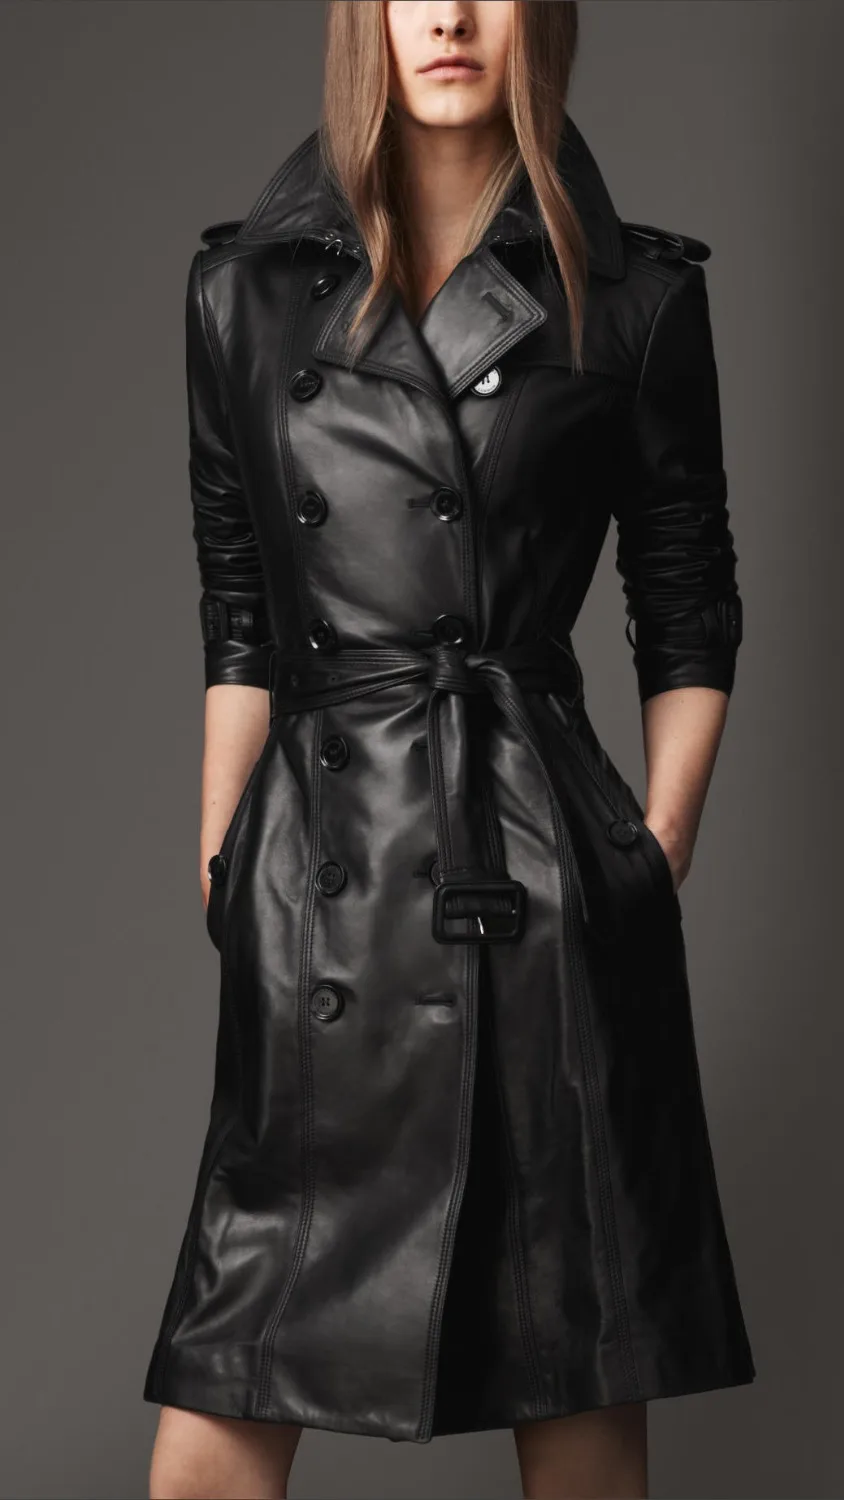 Европейский женский приталенная кожаная куртка PU кожаное пальто X-long Тренч XXXL плюс размер jaqueta couro кожаное пальто XQ076